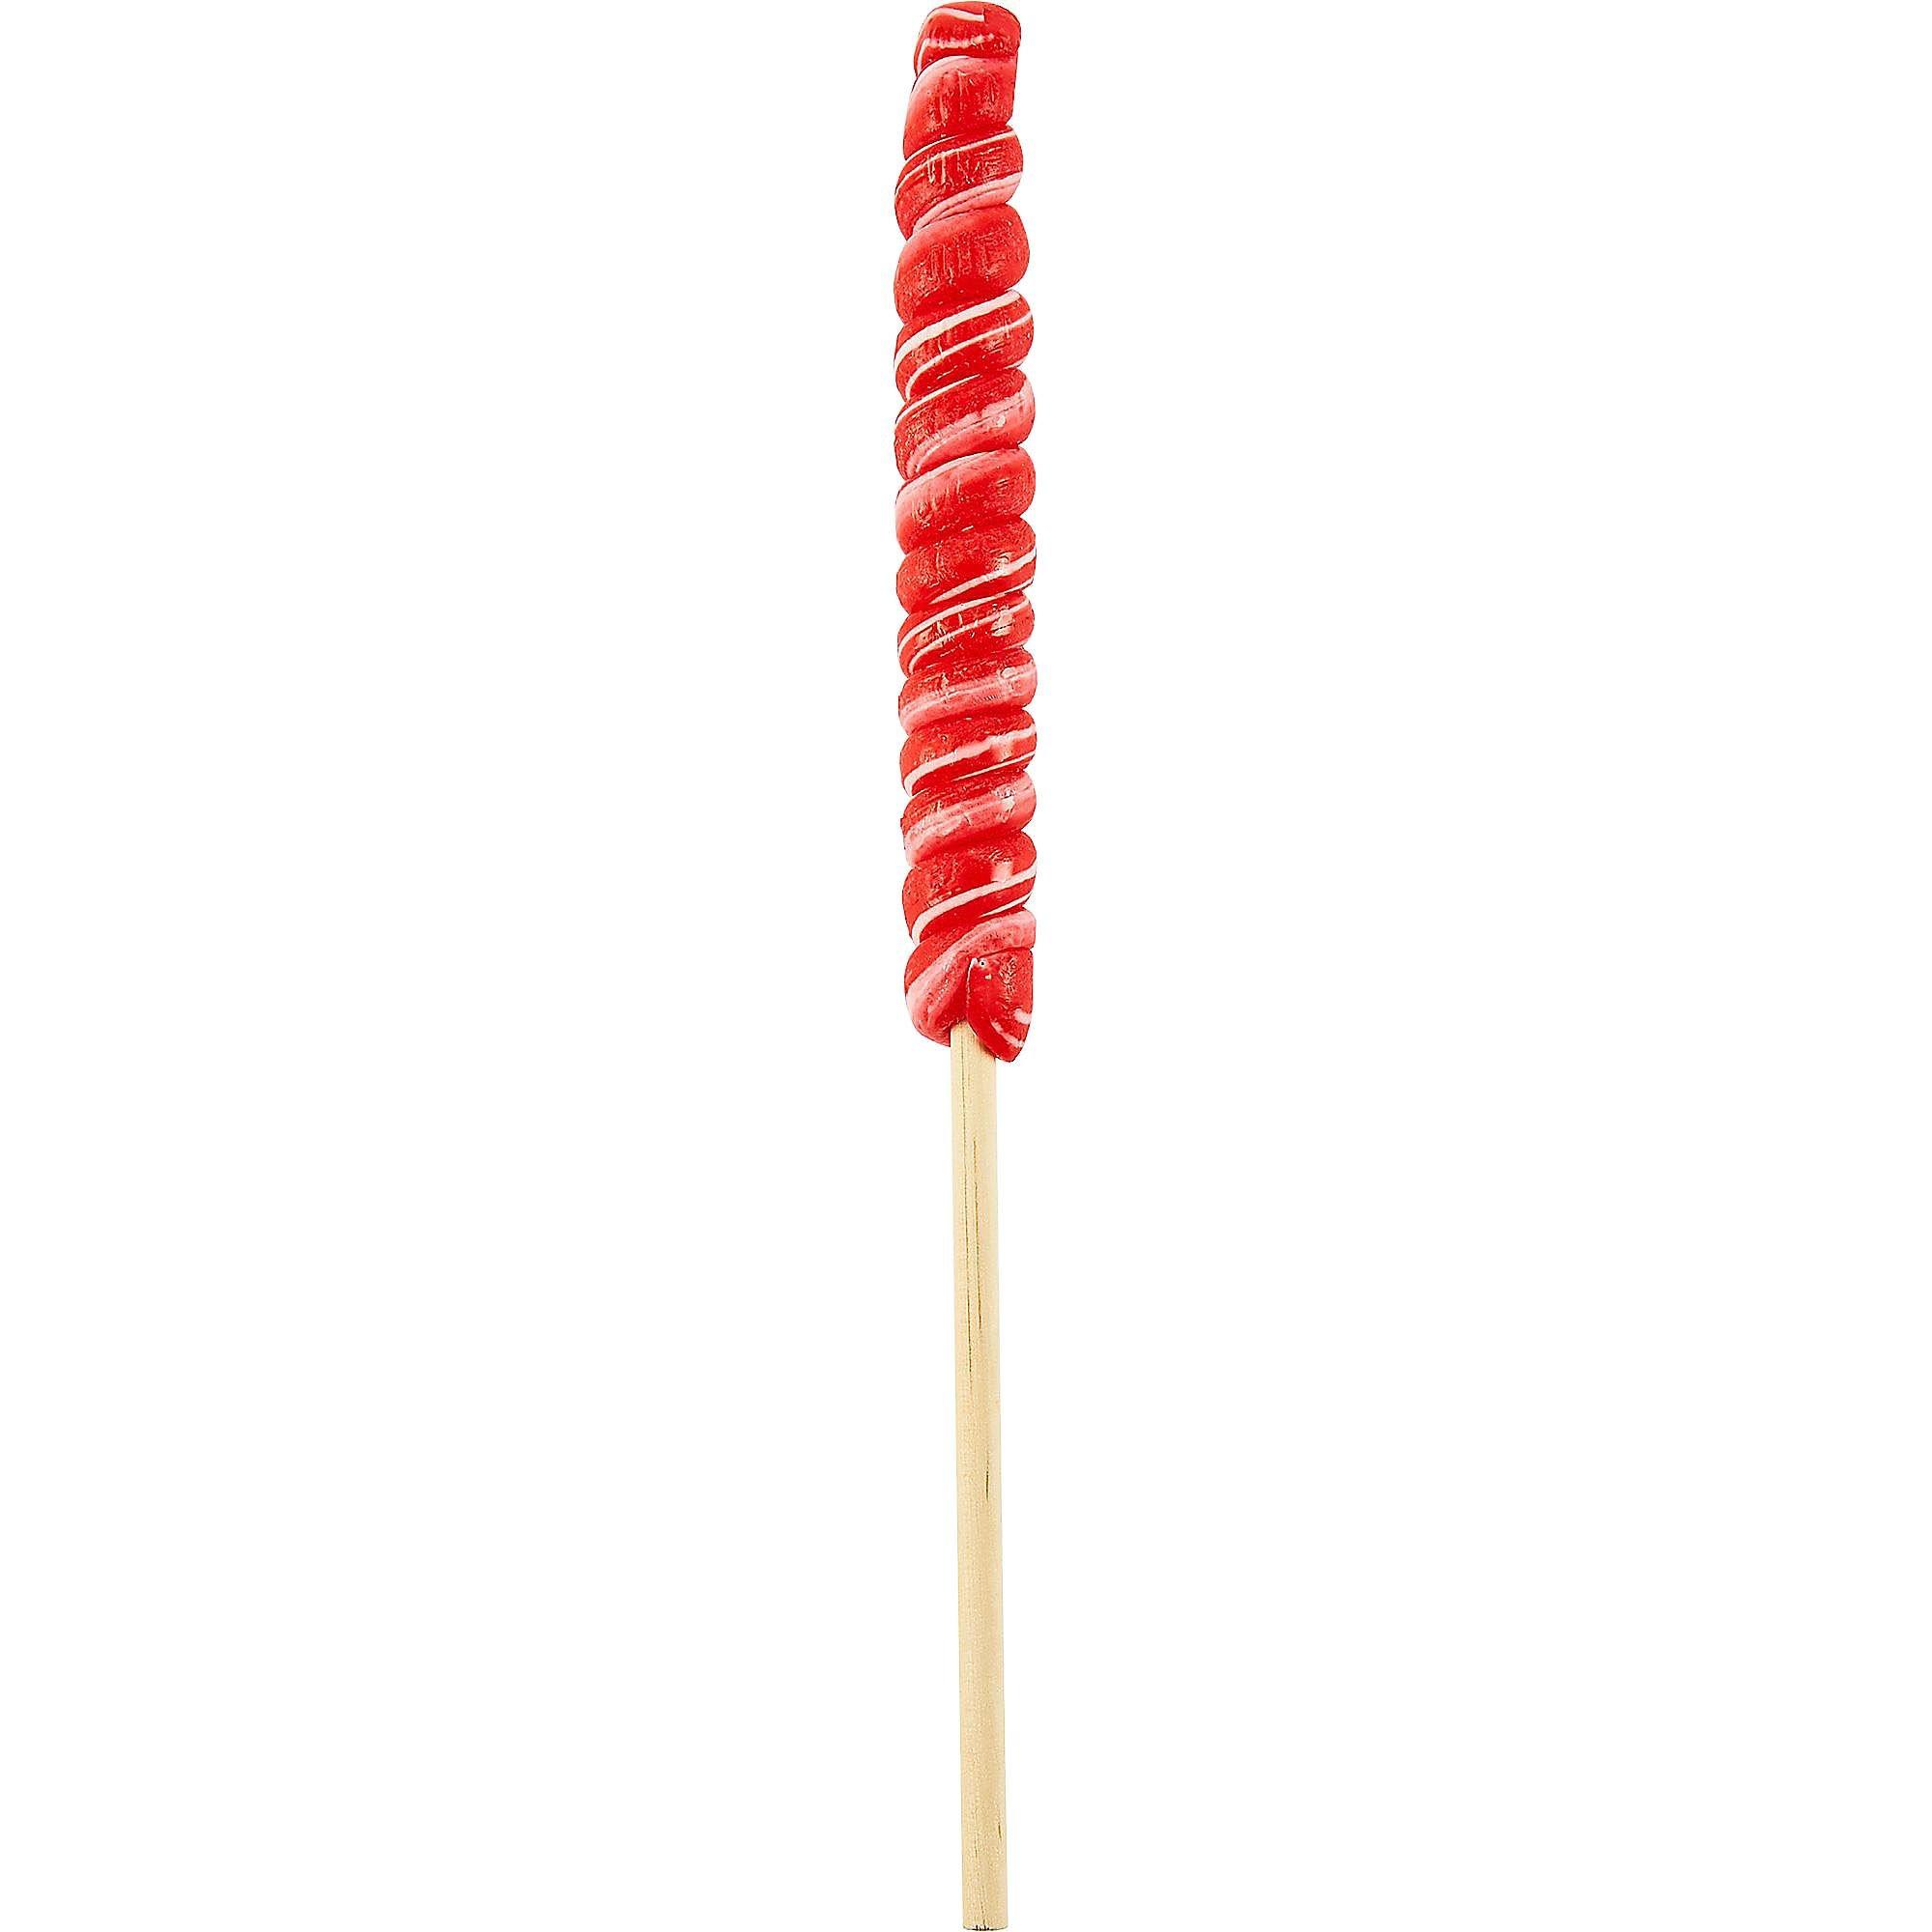 Large Twisty Lollipops 6ct